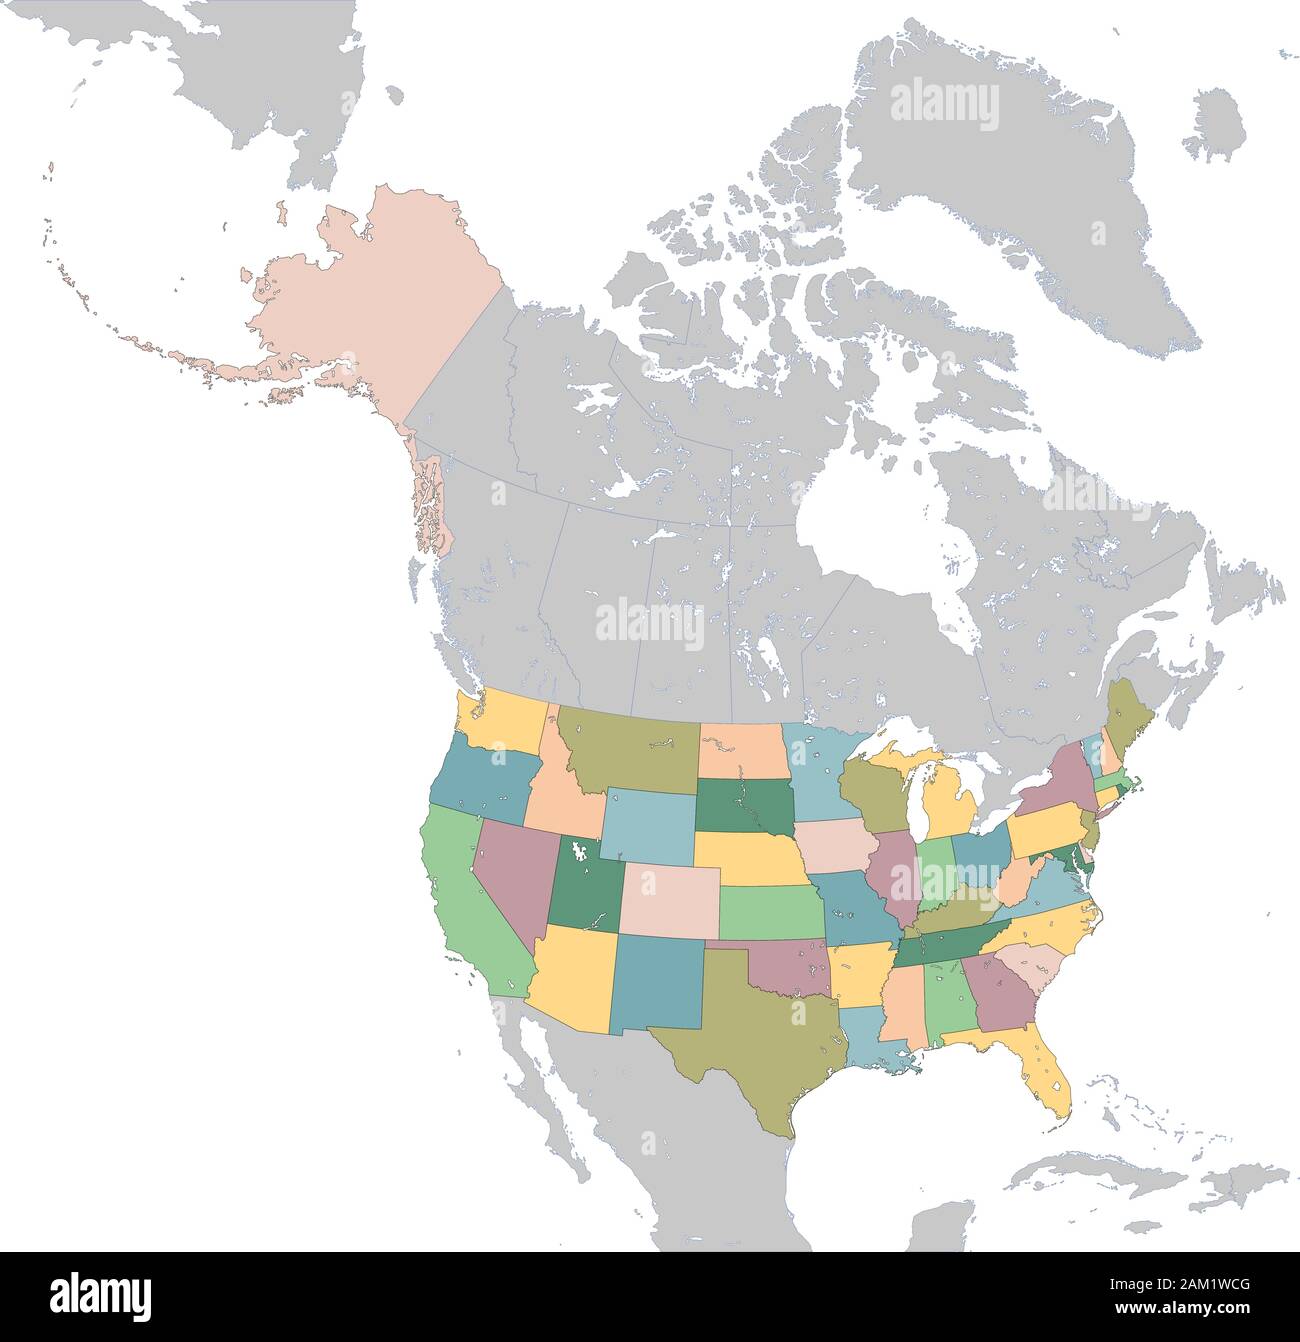 Illustration carte des États-Unis d'Amérique Illustration de Vecteur